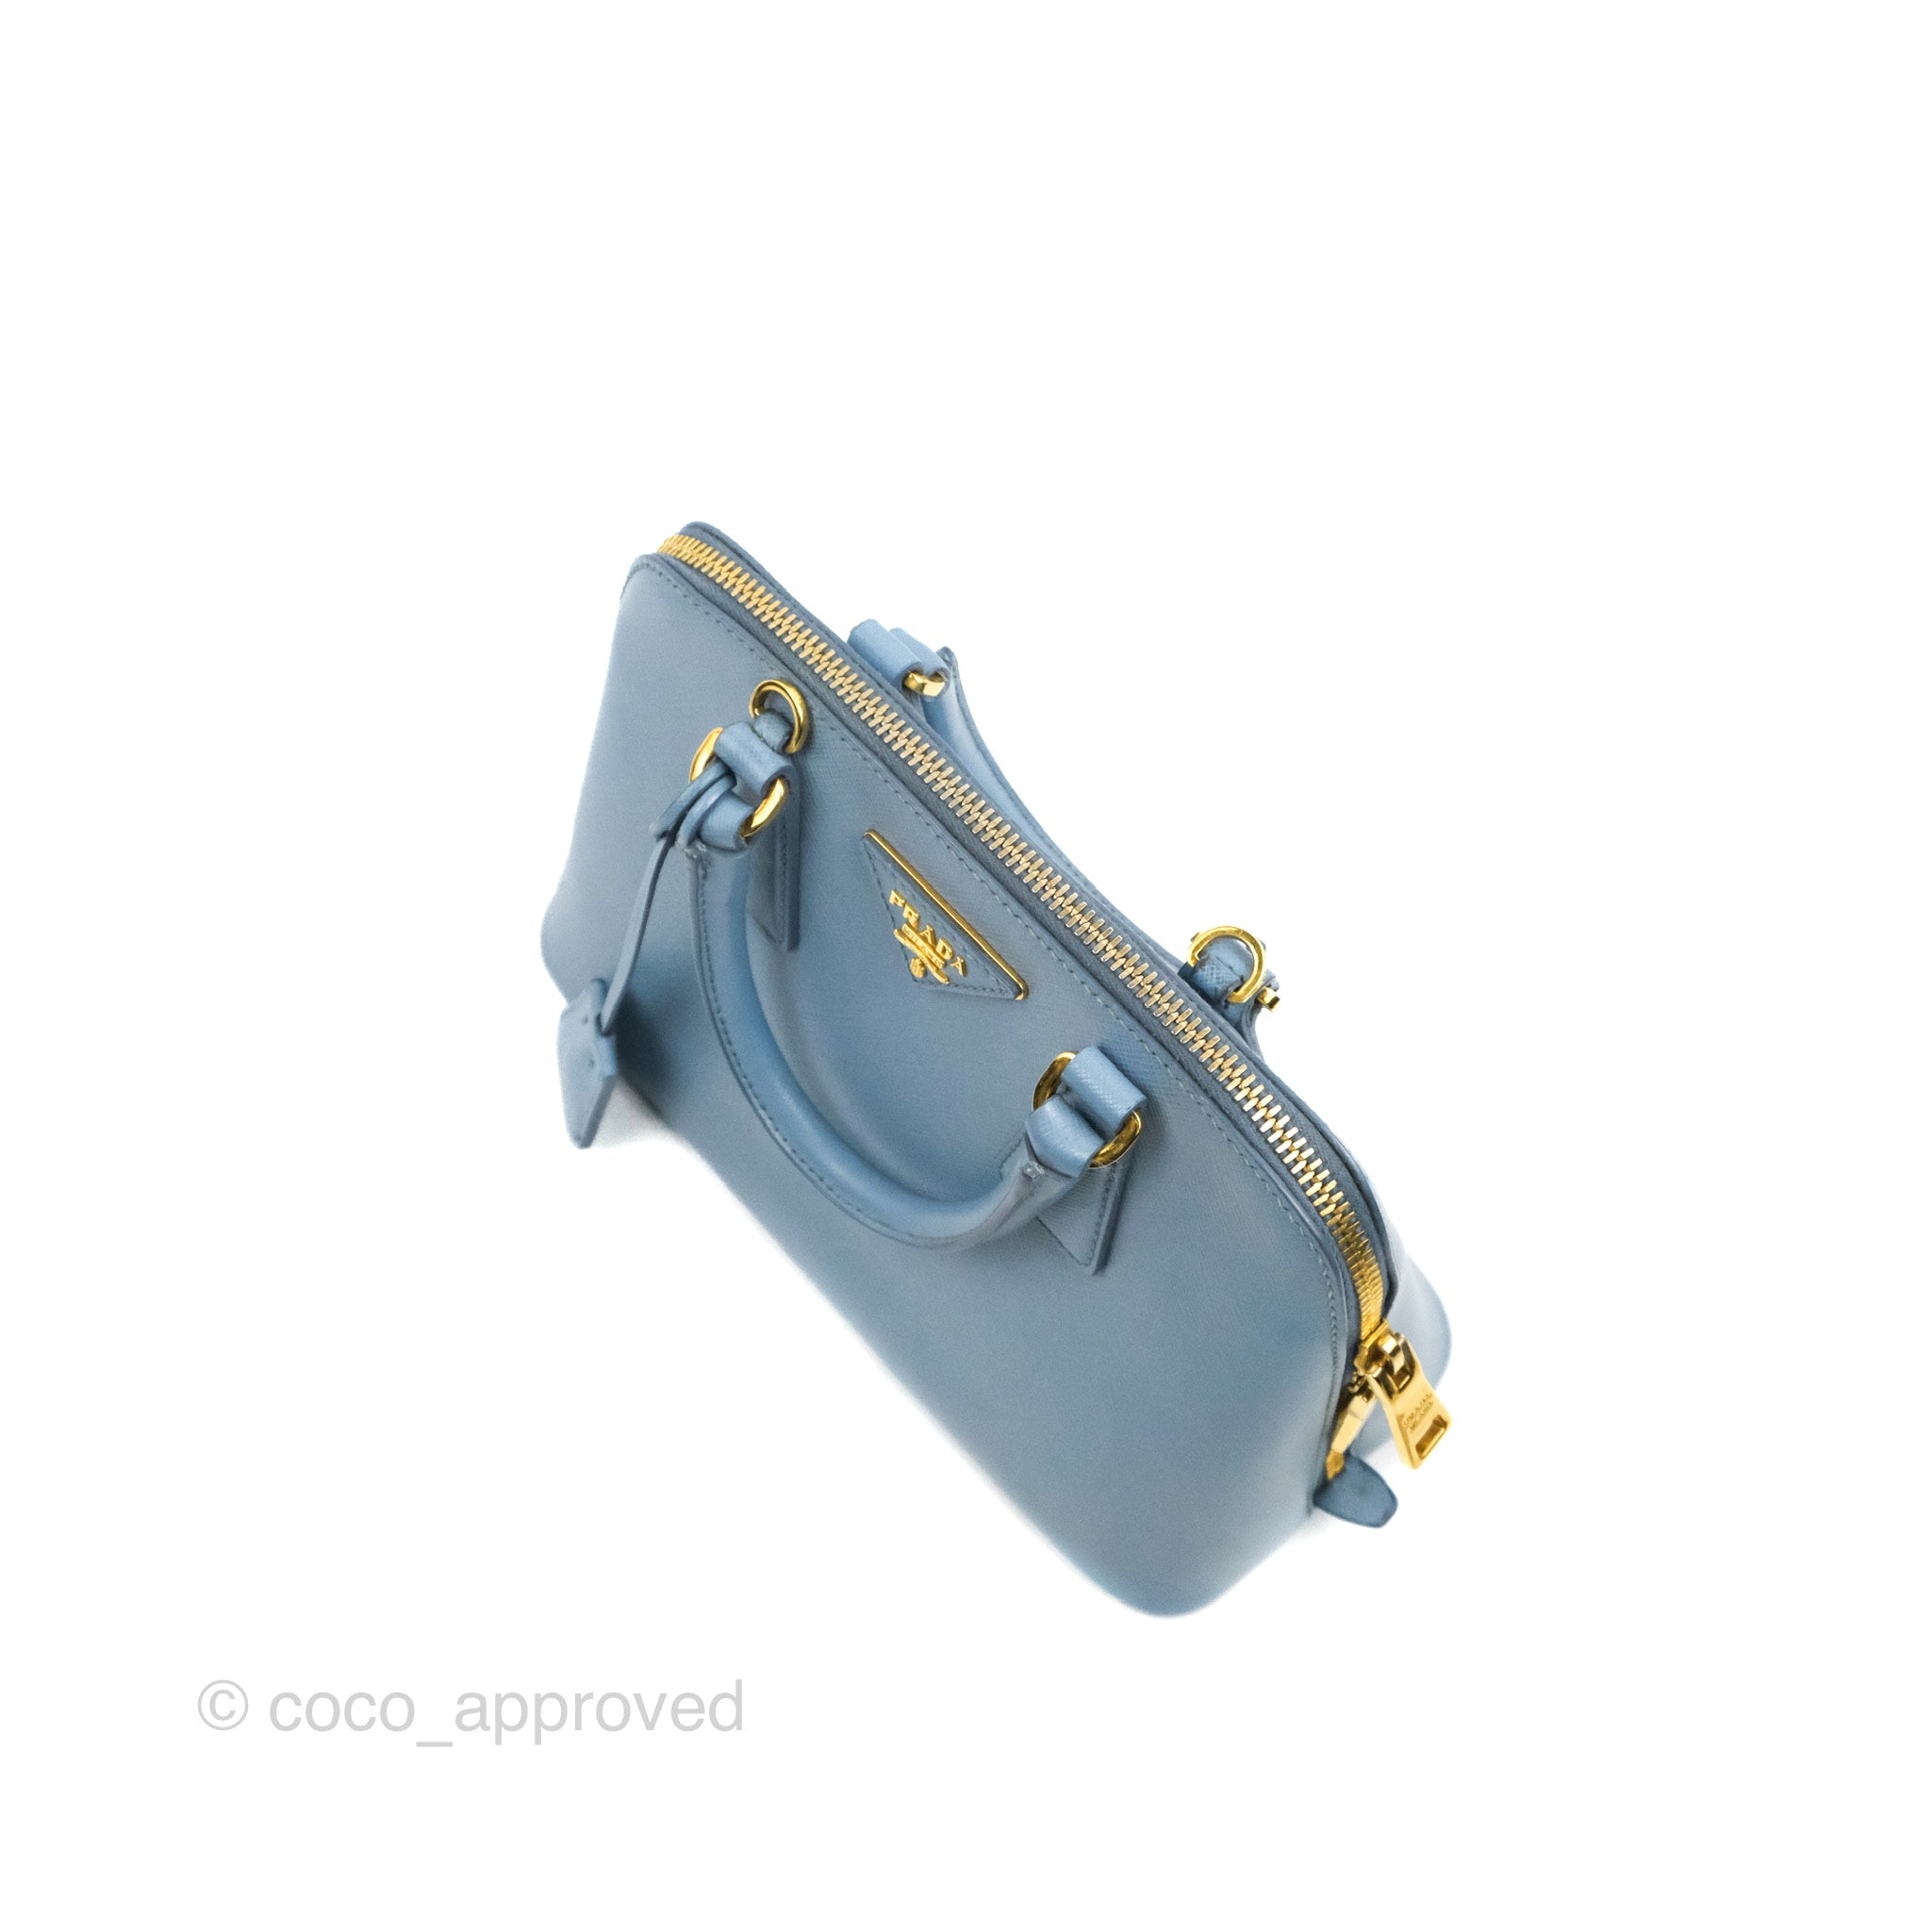 Prada Blue Saffiano Lux Leather Mini Promenade Crossbody Bag at